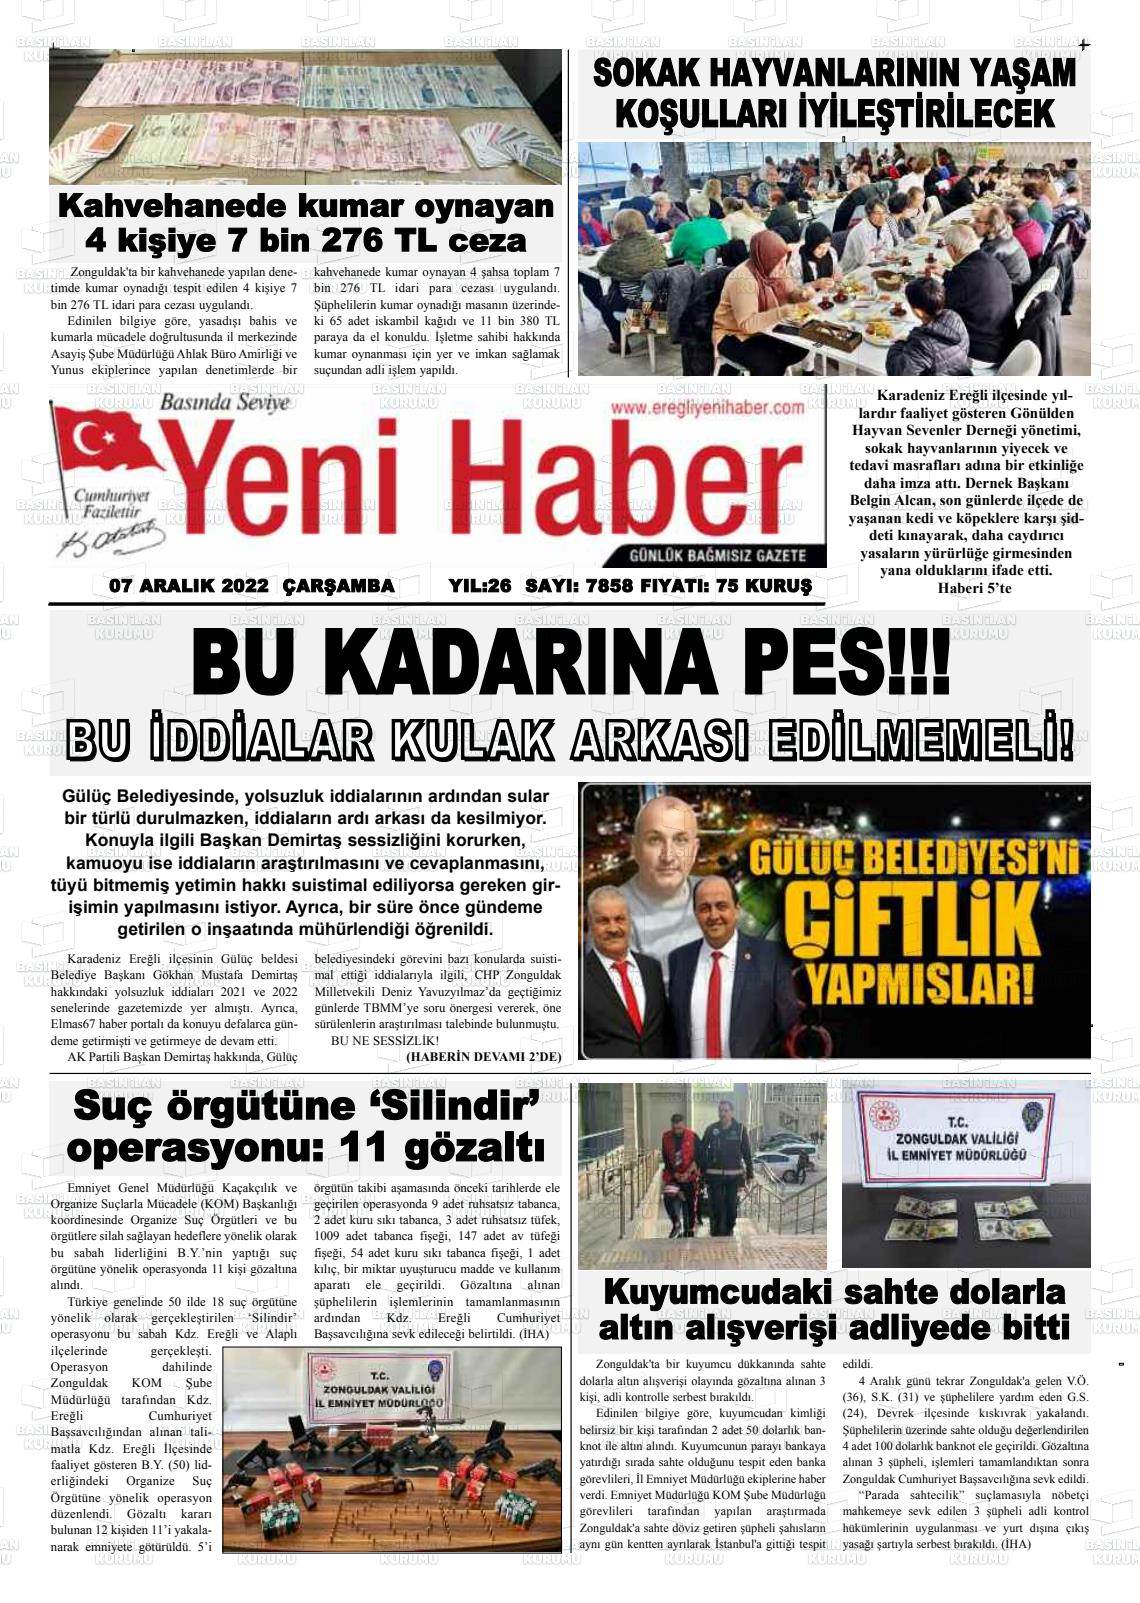 07 Aralık 2022 Ereğli Yeni Haber Gazete Manşeti